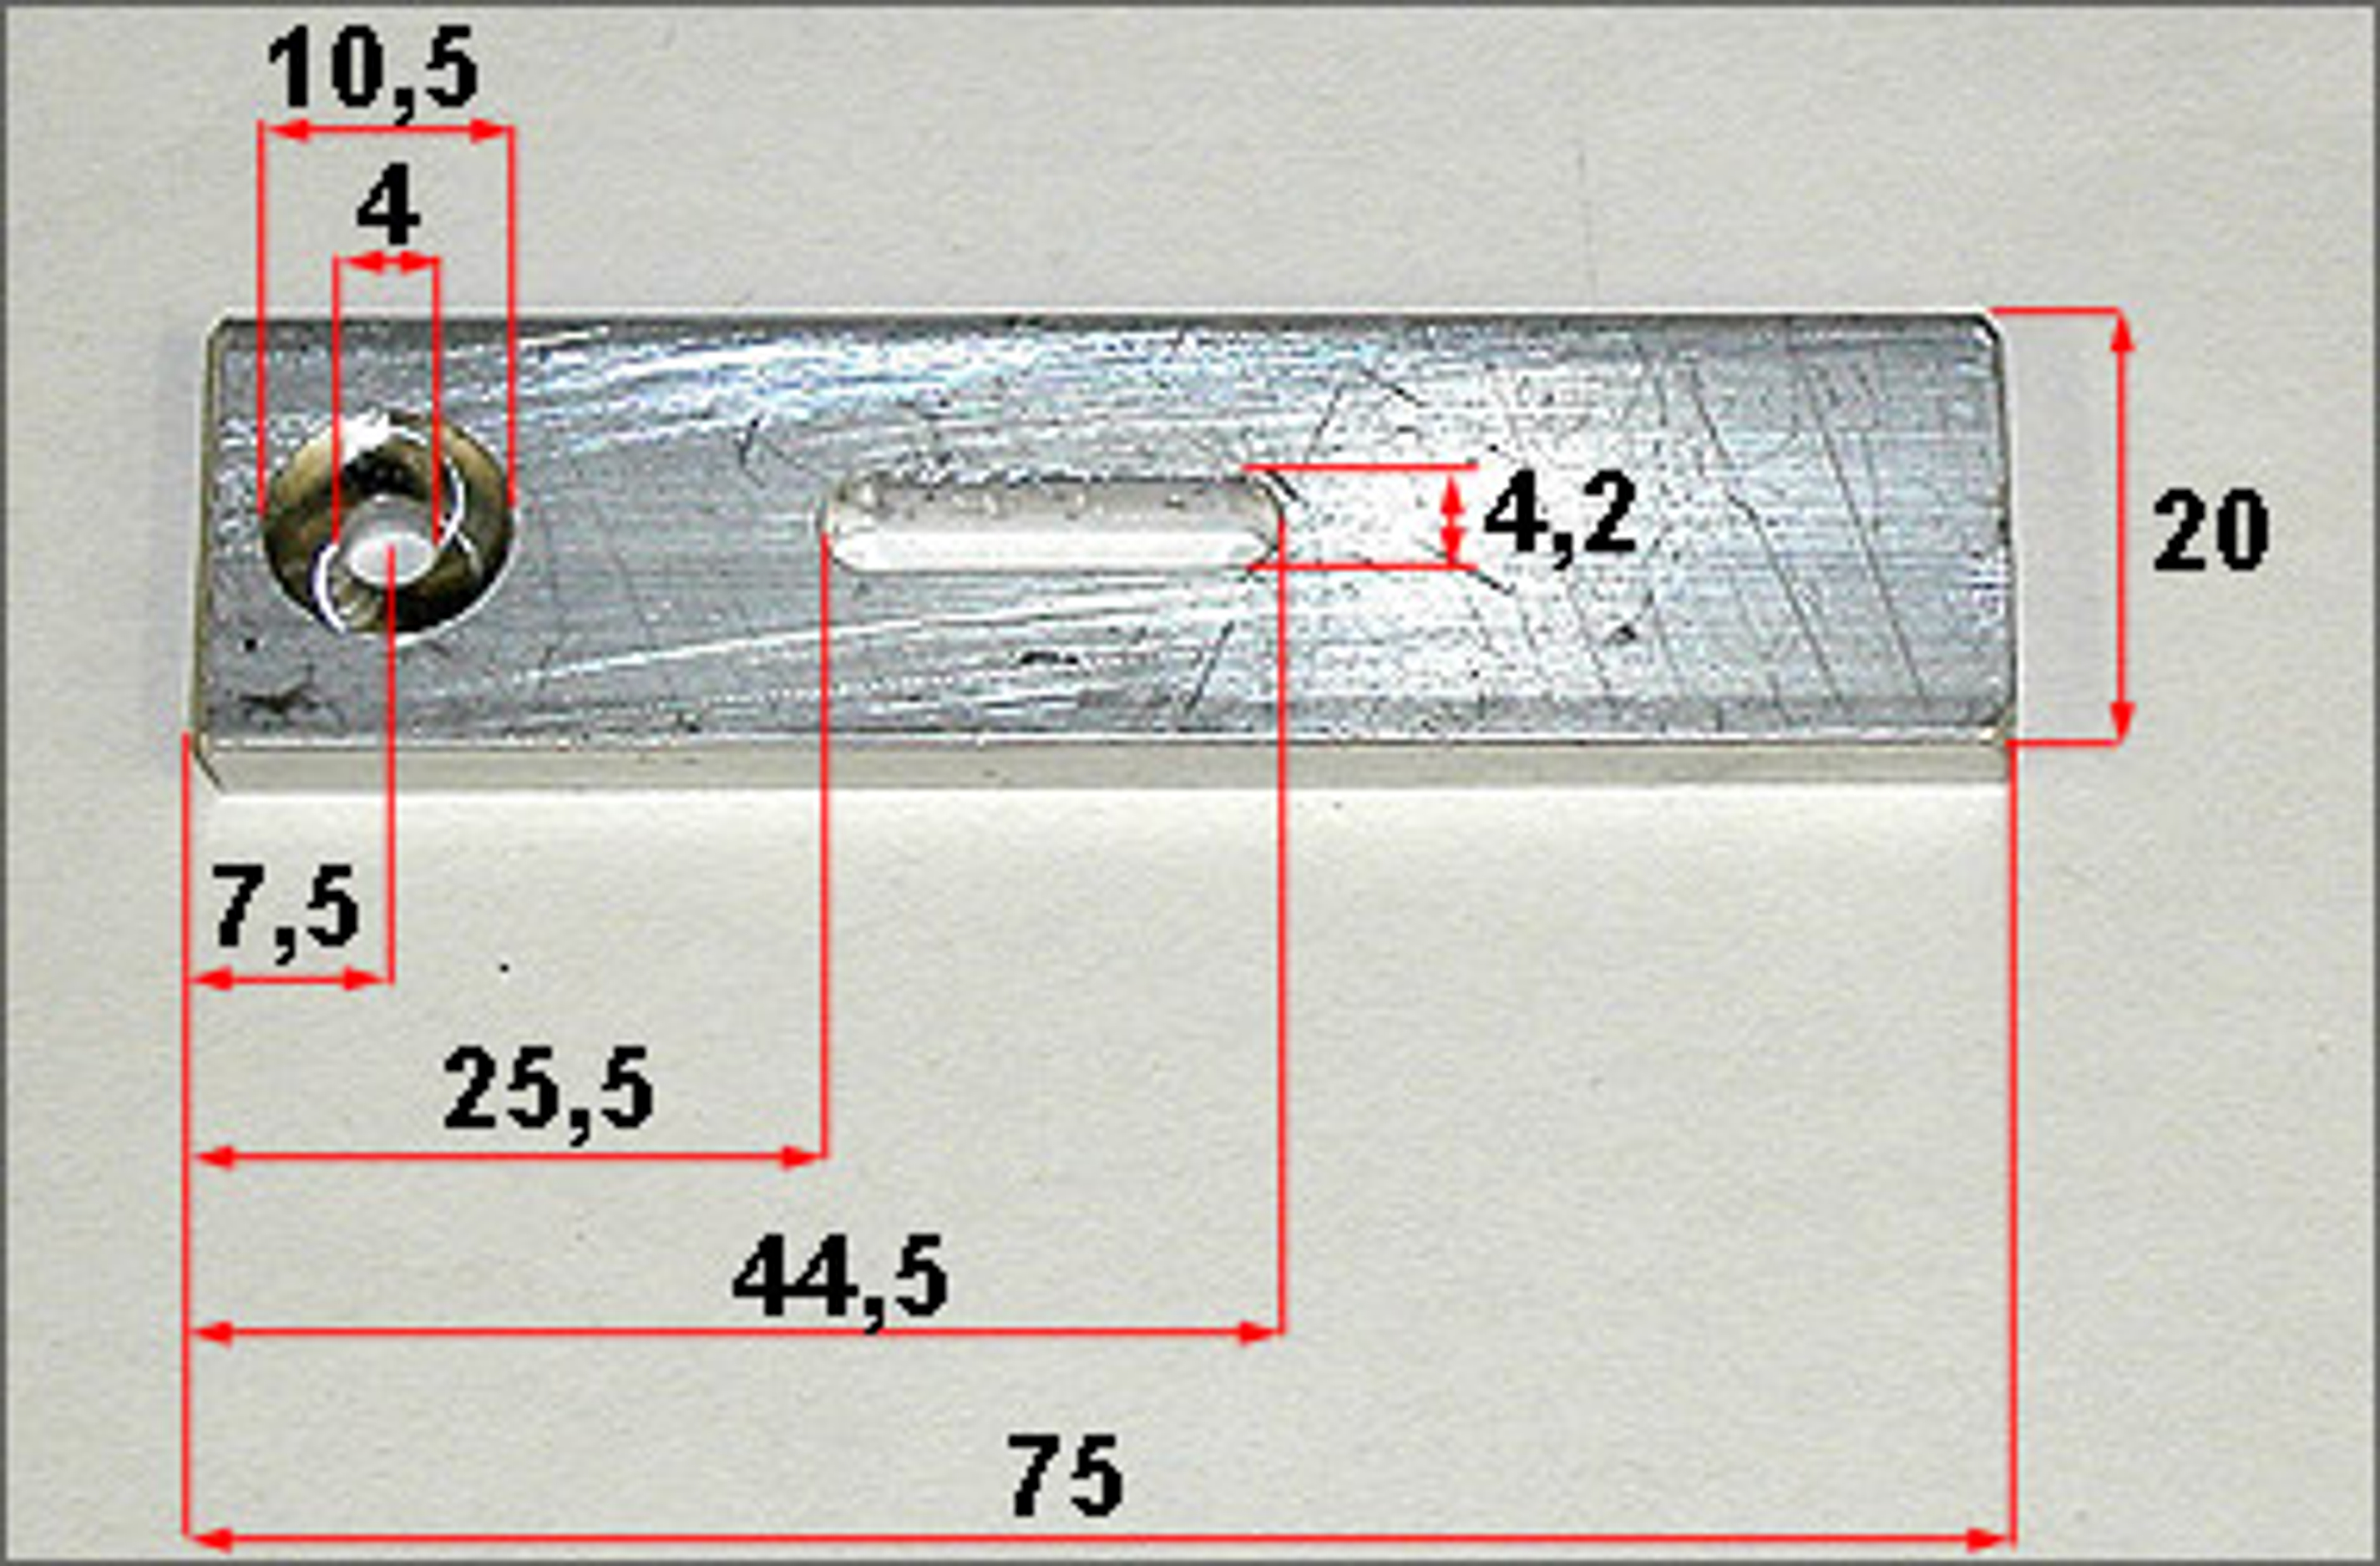 7406/05, FG Aluminum mounting bracket for FG Steel Side Power, 1 pce.